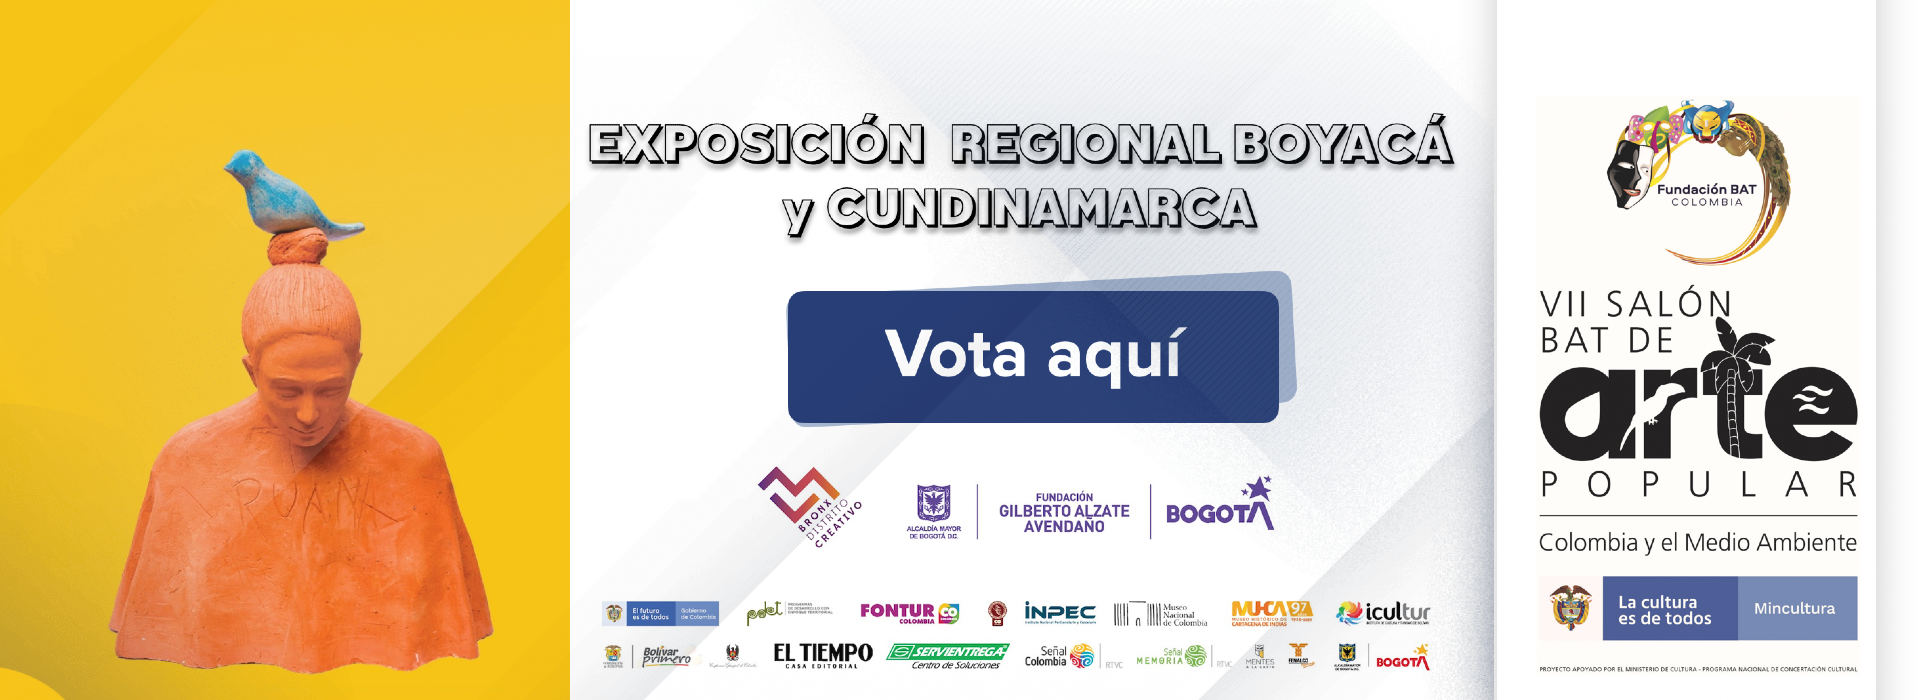 Votaciones Boyacá y Cundinamarca